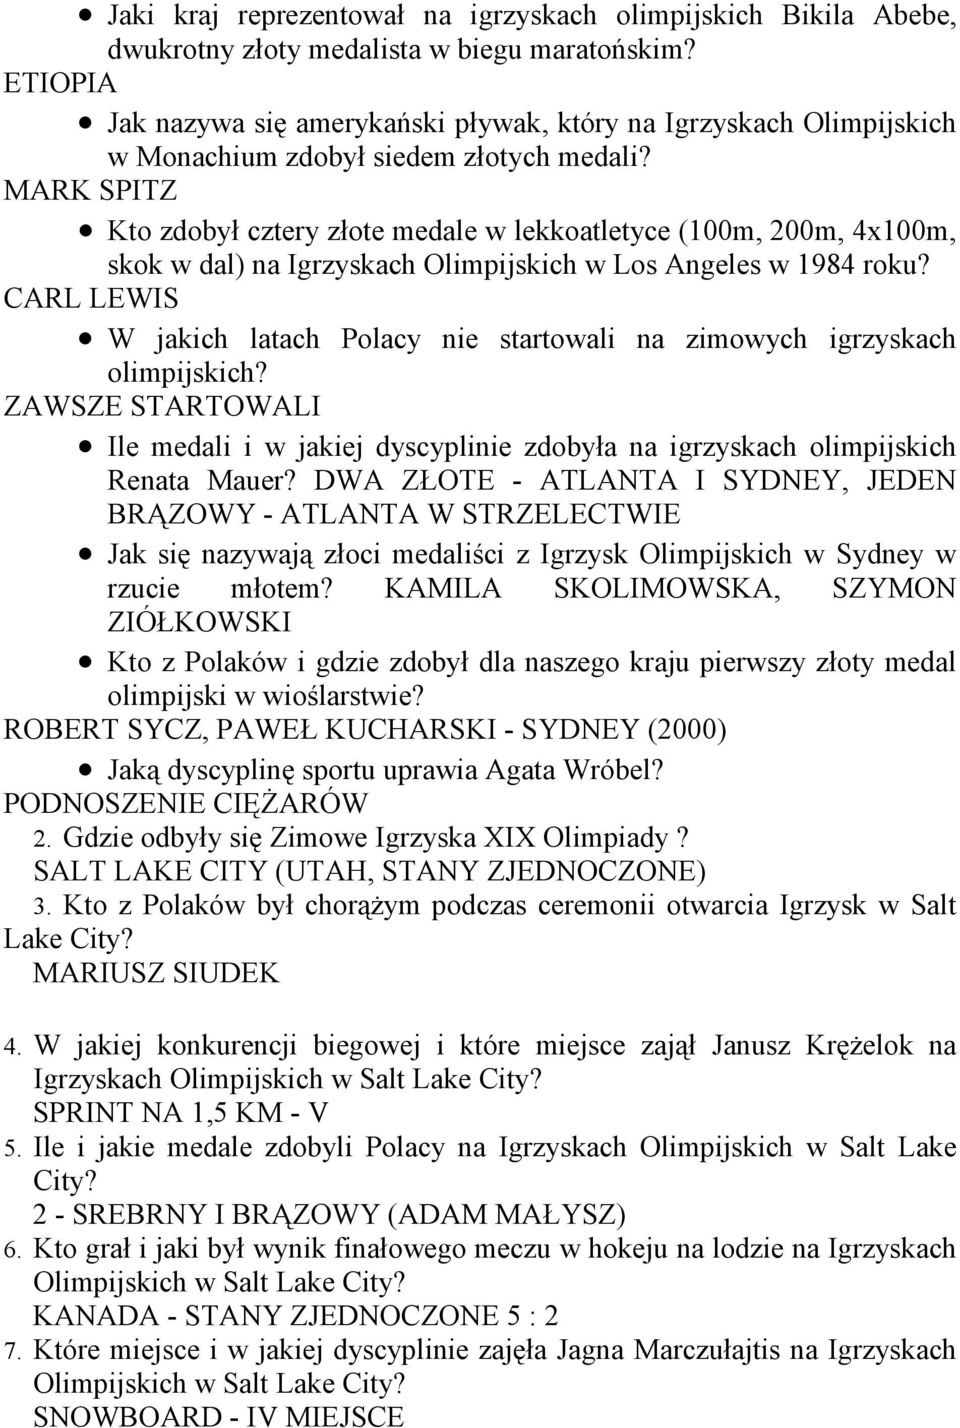 MARK SPITZ Kto zdobył cztery złote medale w lekkoatletyce (100m, 200m, 4x100m, skok w dal) na Igrzyskach Olimpijskich w Los Angeles w 1984 roku?